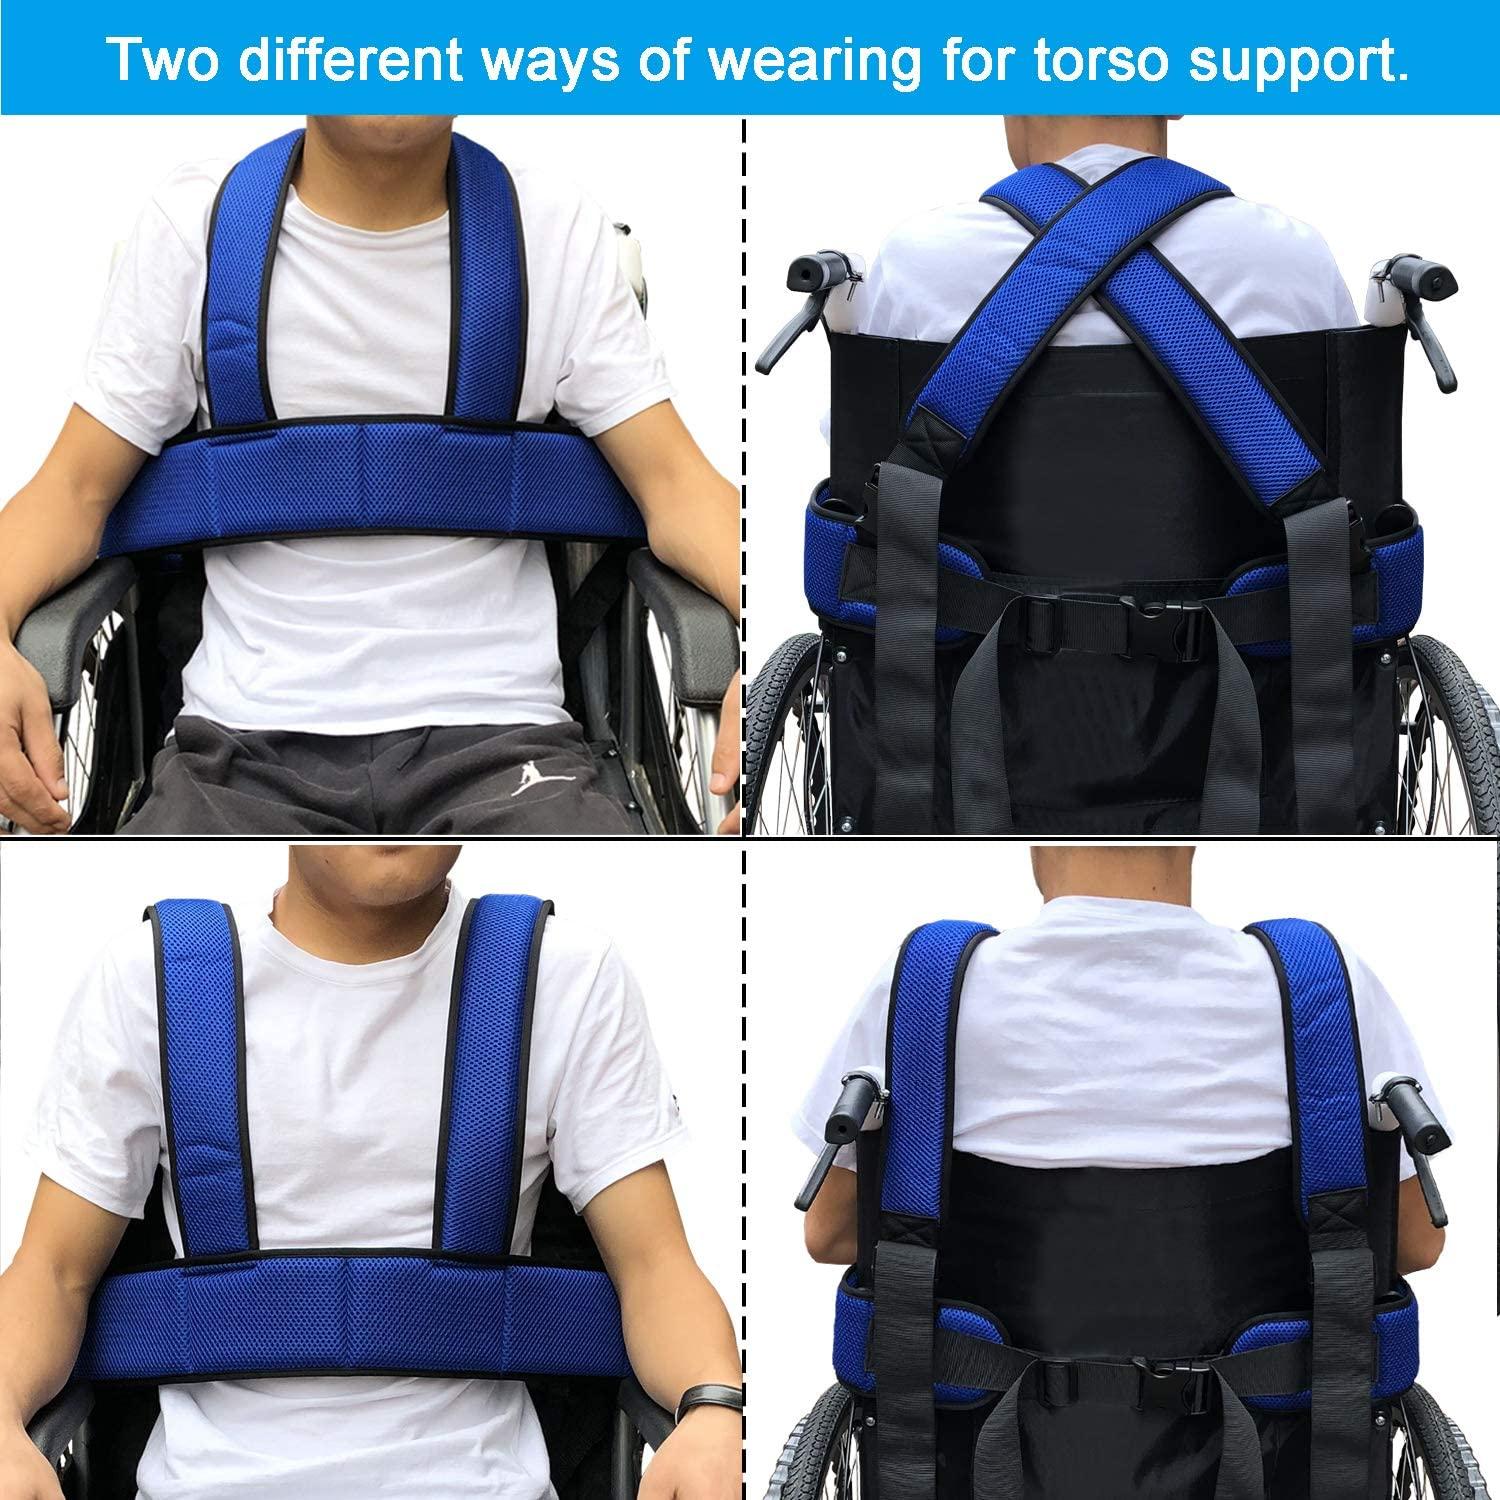 Wheelchair Seat Belt Wheelchair Accessories Safety Belt for Elderly  Wheelchair Belt Restraint Chest Harness Adjustable Strap Patients Cares  Elderly